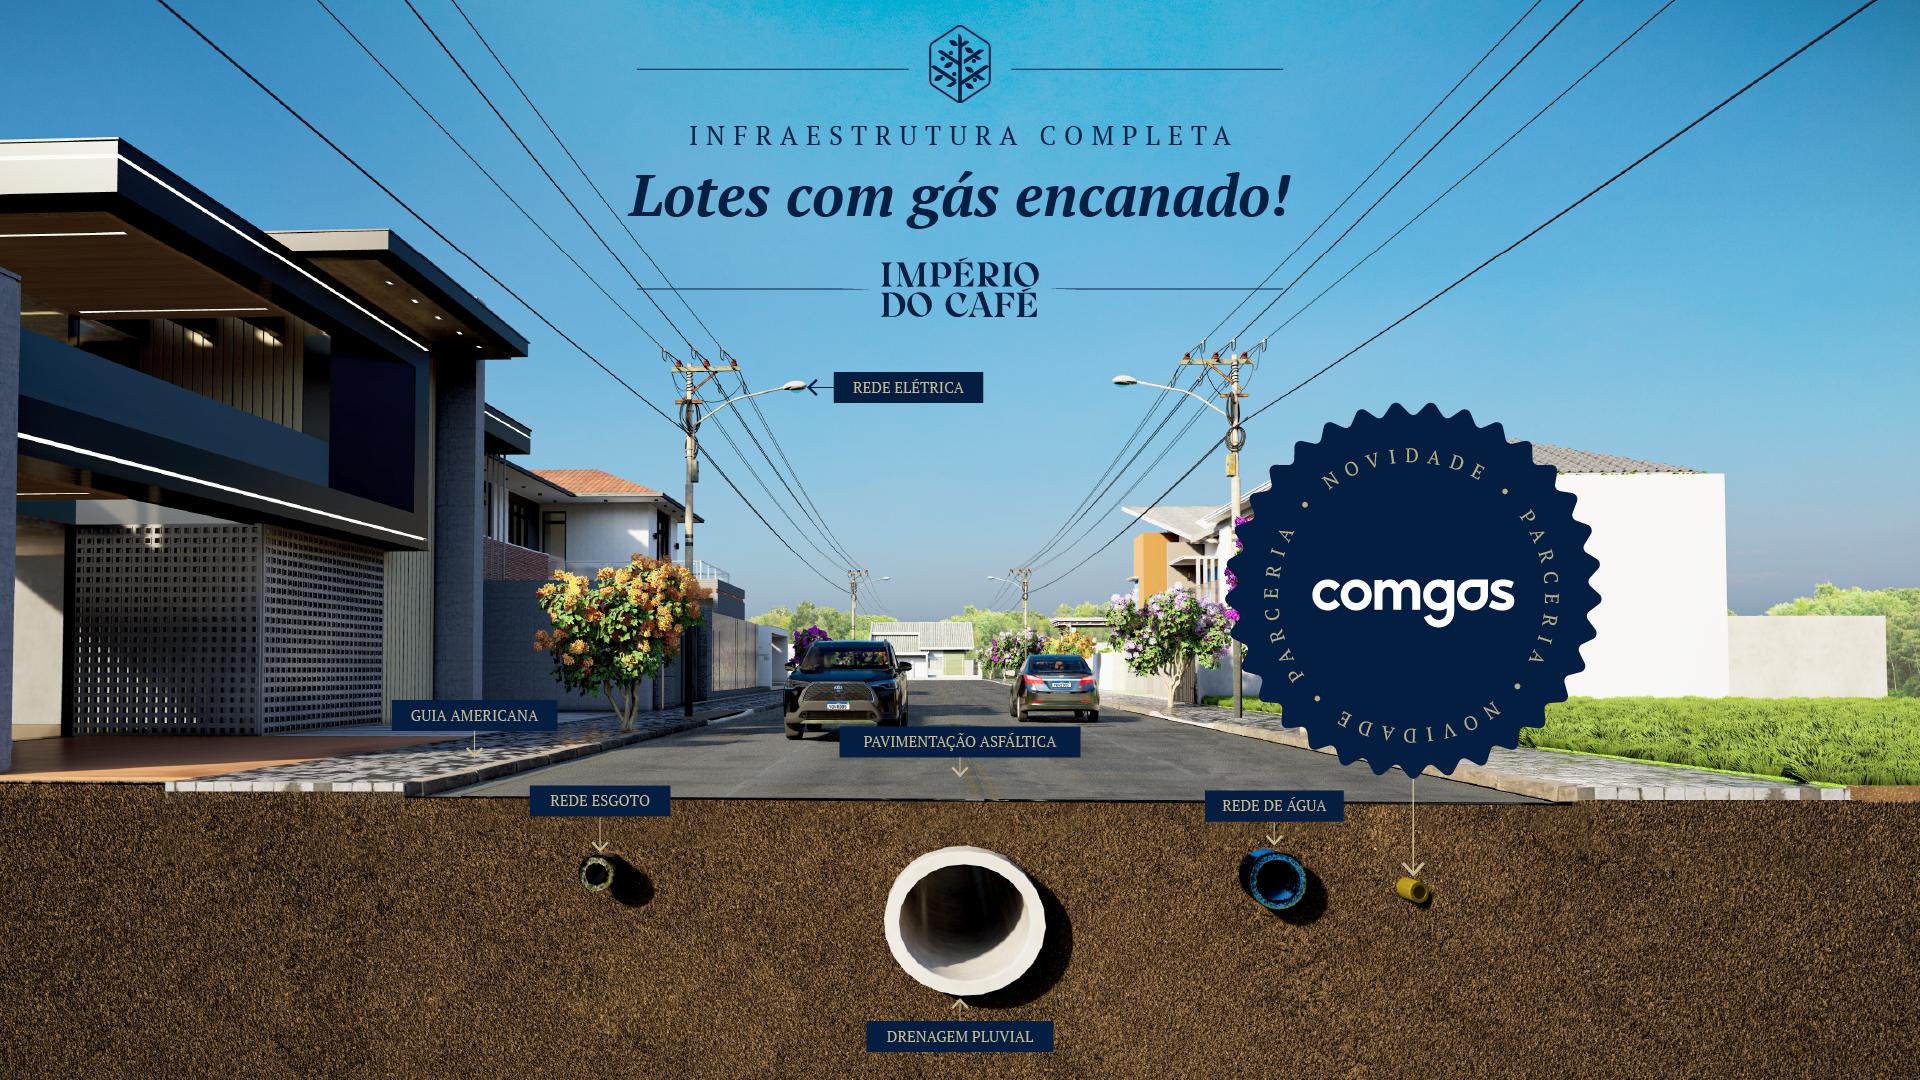 Império do Café e Comgás anunciam parceria inovadora: gás encanado garantido para todo o loteamento